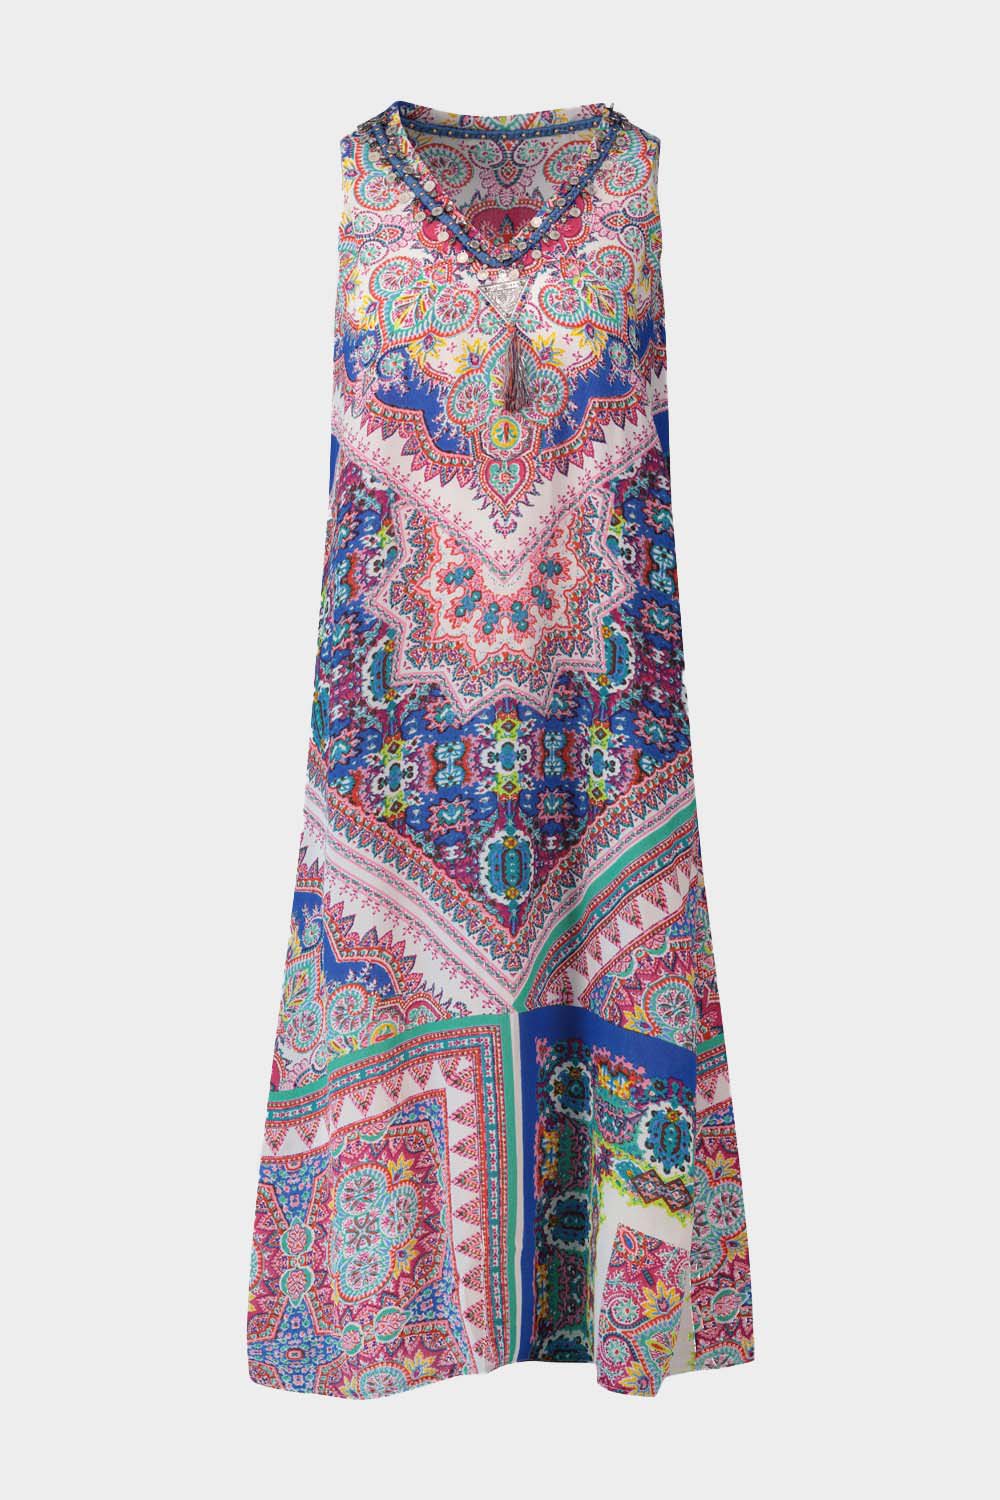 שמלת SOHO לנשים הדפס אתני צבעוני RENE DERHY Vendome online | ונדום .